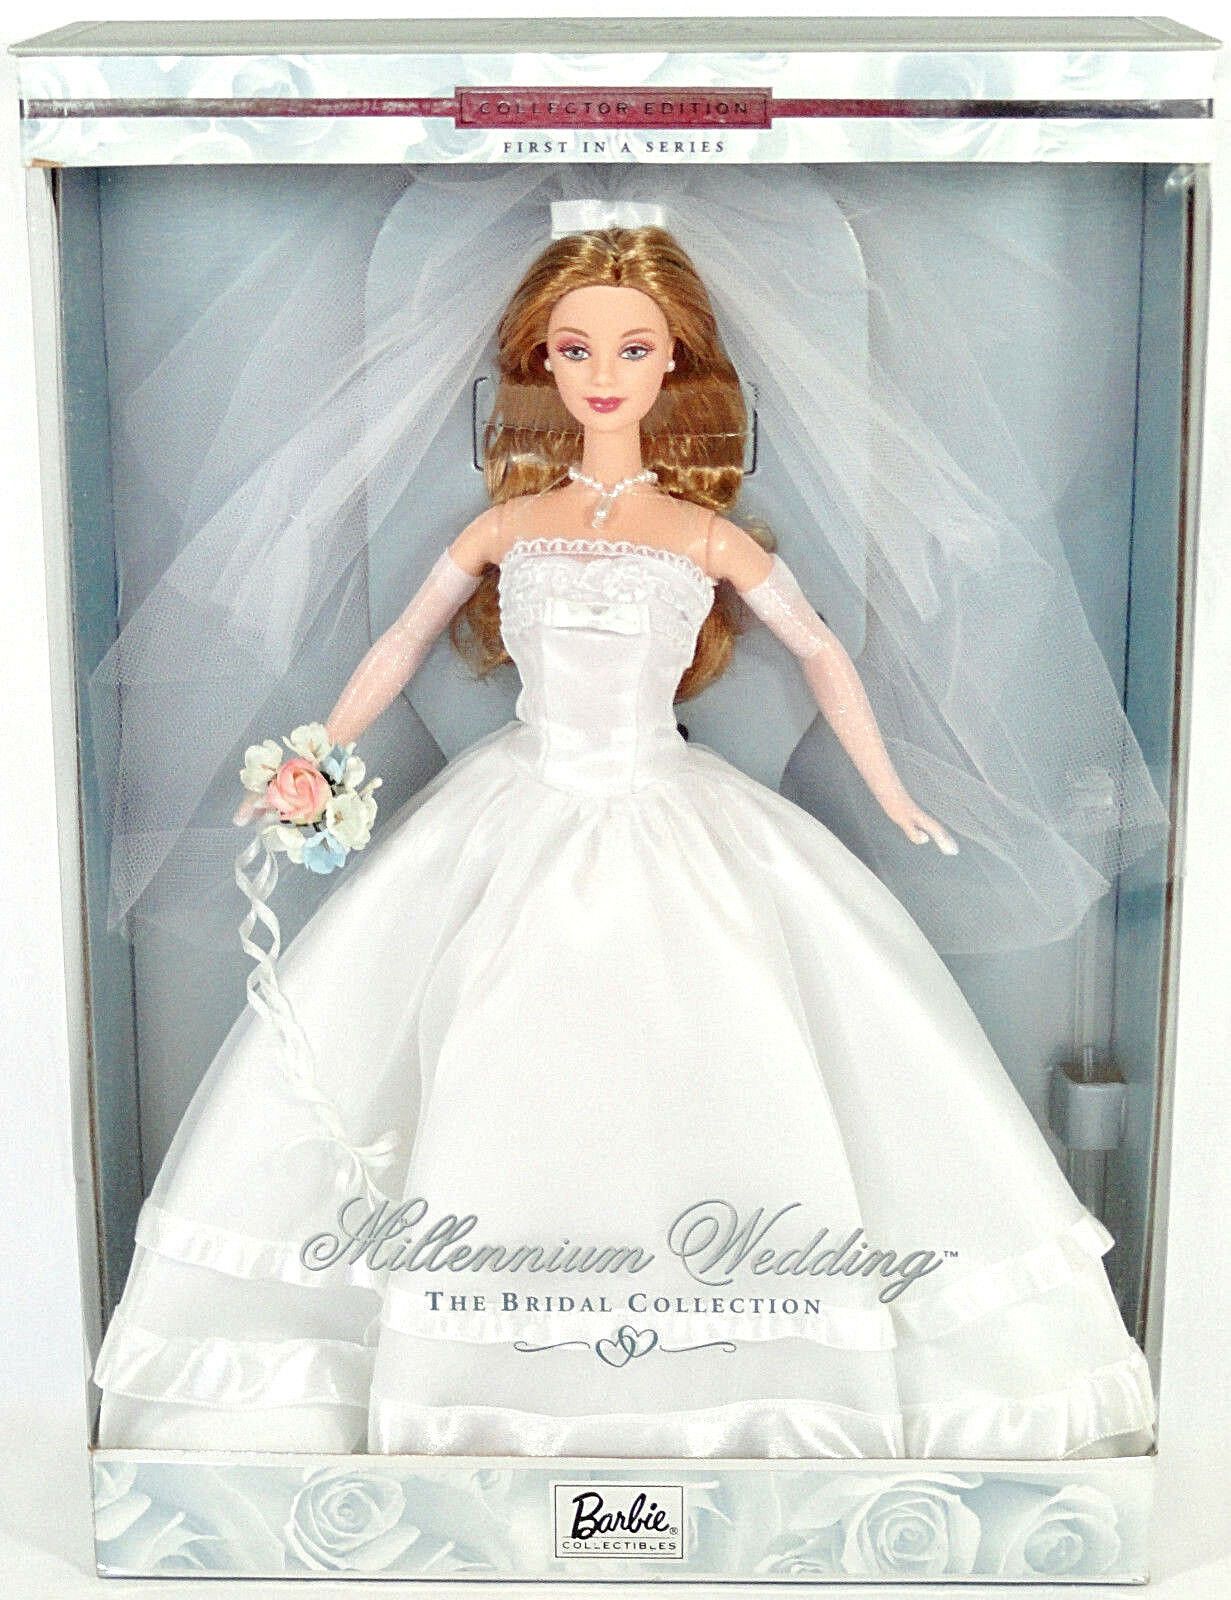 millennium_wedding_barbie_1999.jpg